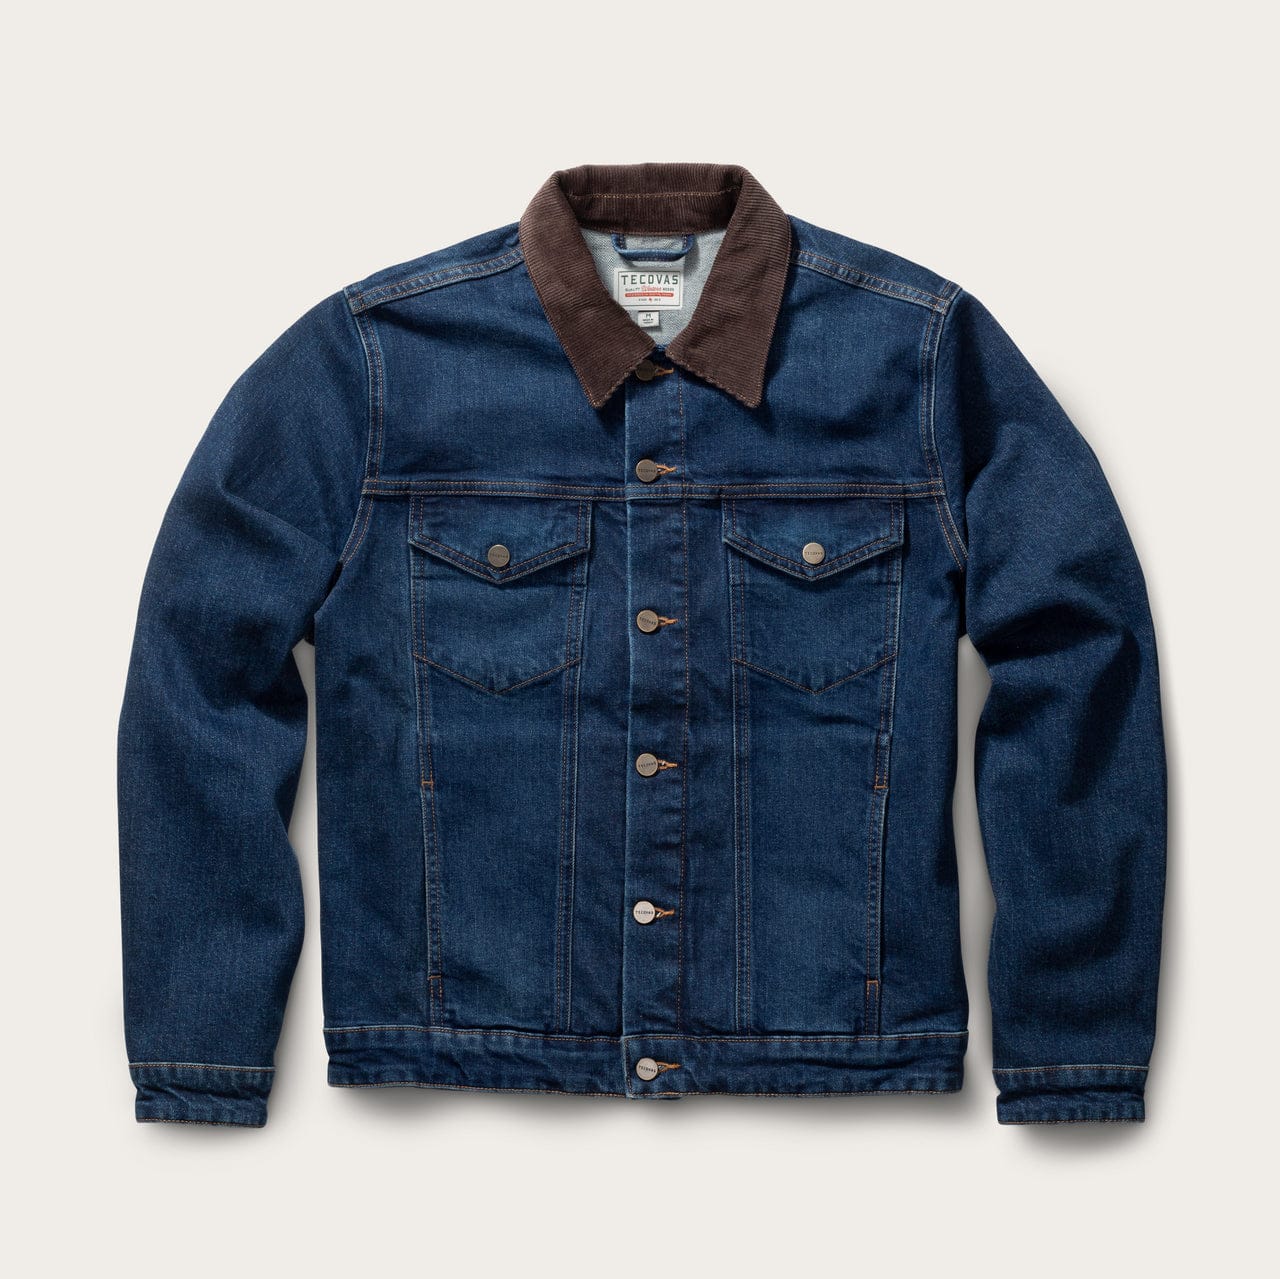 discount 64% Soyaconcept jacket Beige XL WOMEN FASHION Jackets Jacket Jean 